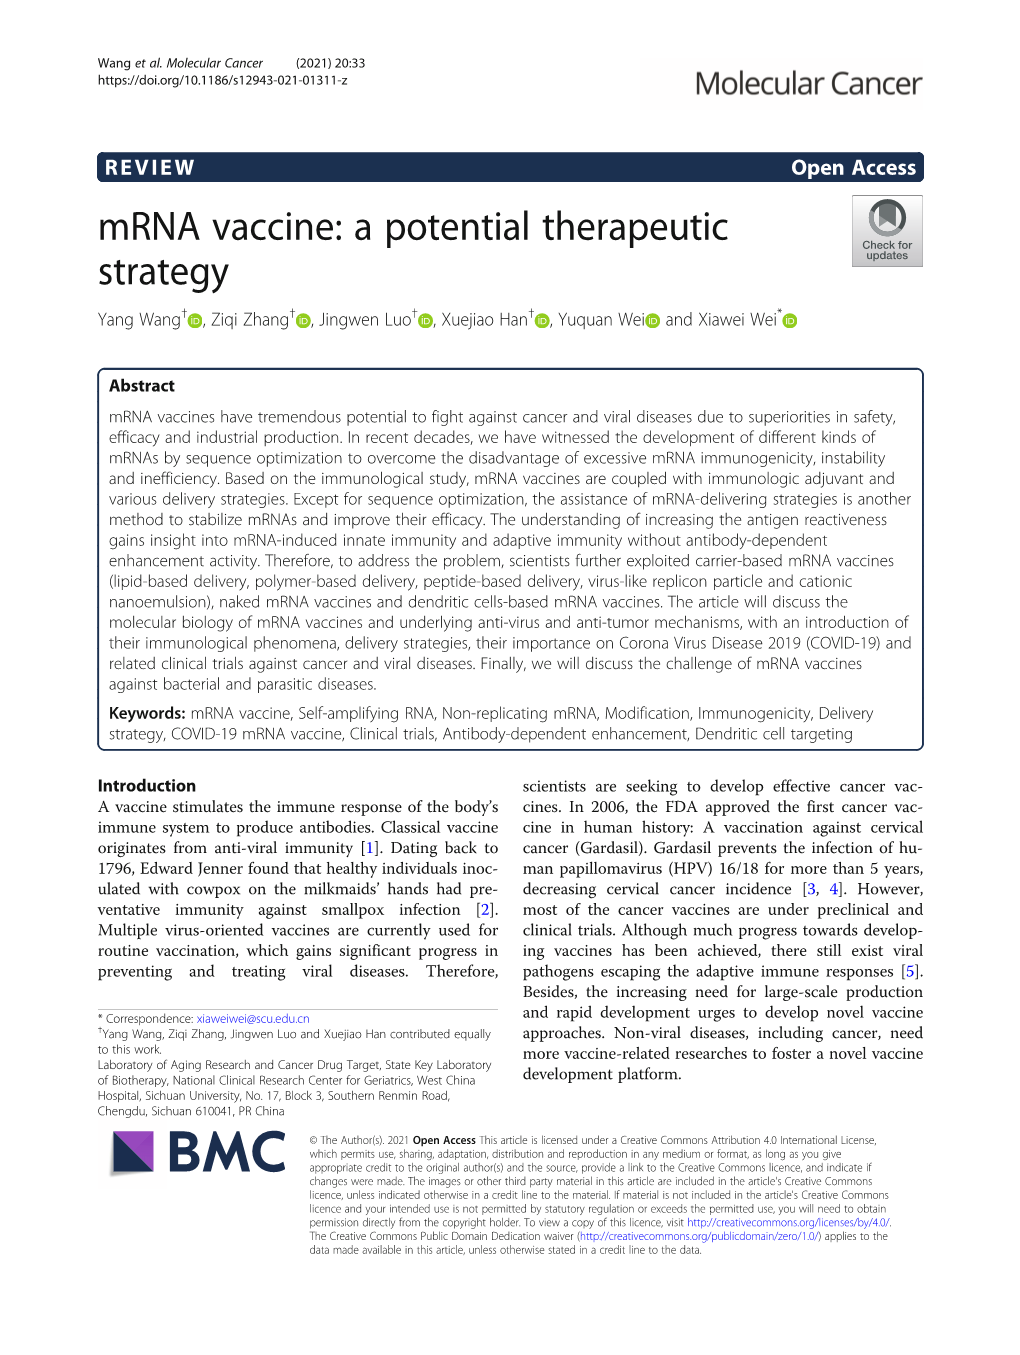 Mrna Vaccine: a Potential Therapeutic Strategy Yang Wang† , Ziqi Zhang† , Jingwen Luo† , Xuejiao Han† , Yuquan Wei and Xiawei Wei*